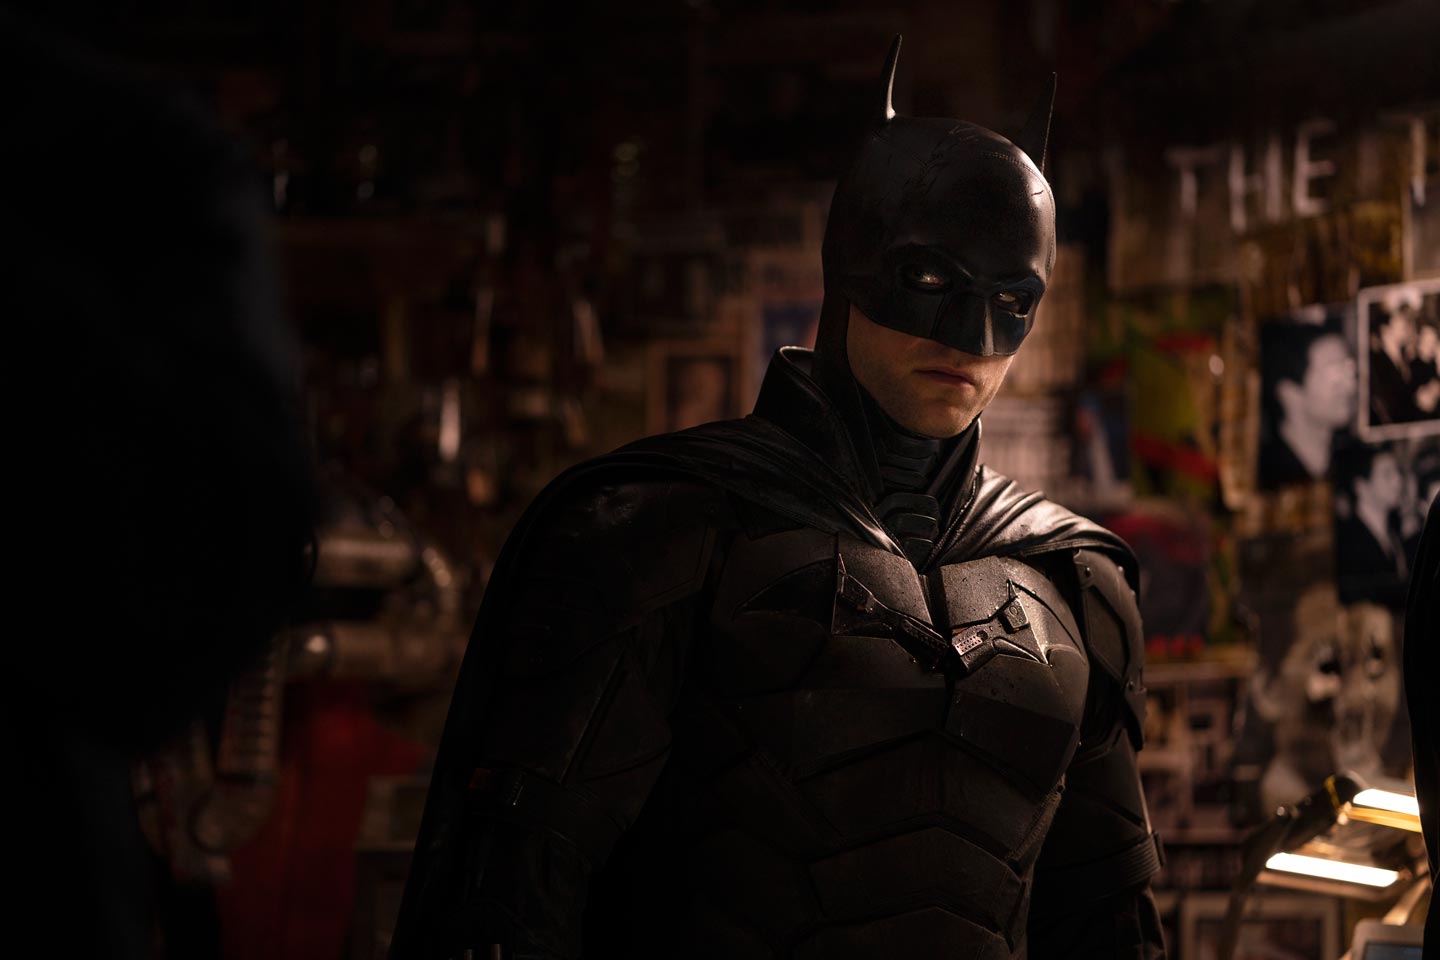 ¡Memorable! BATMAN se convierte en el estreno más exitoso de HBO MAX Latinoamérica